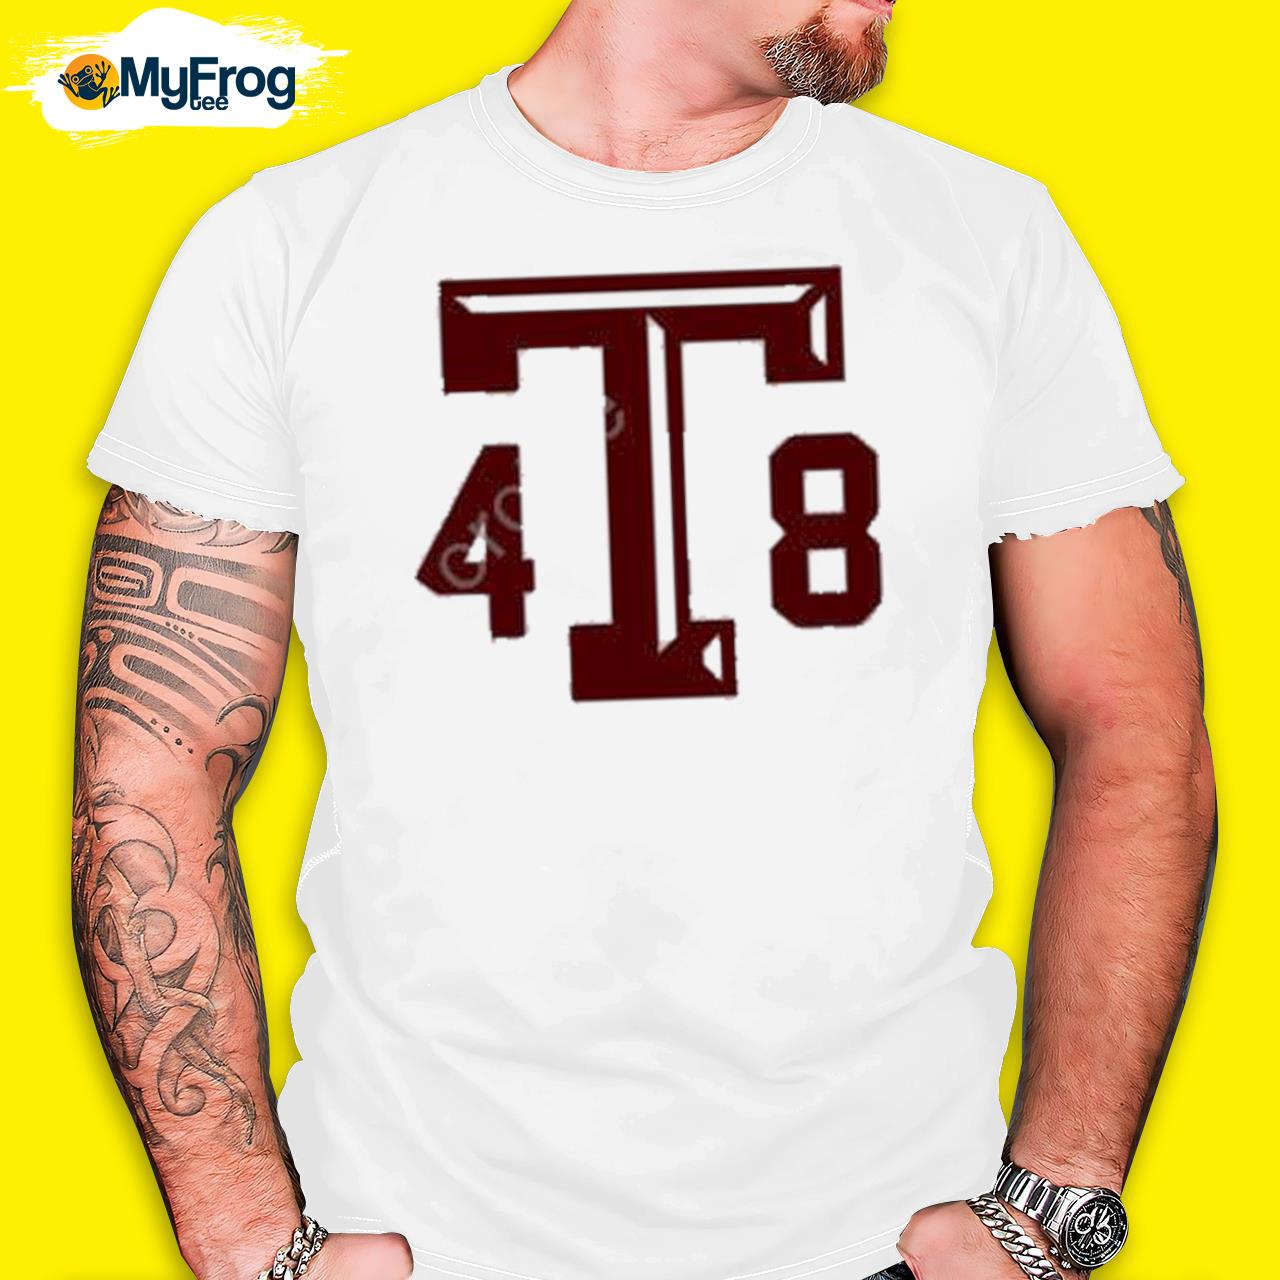 Kyle Umlang 4T8 Tee Shirt